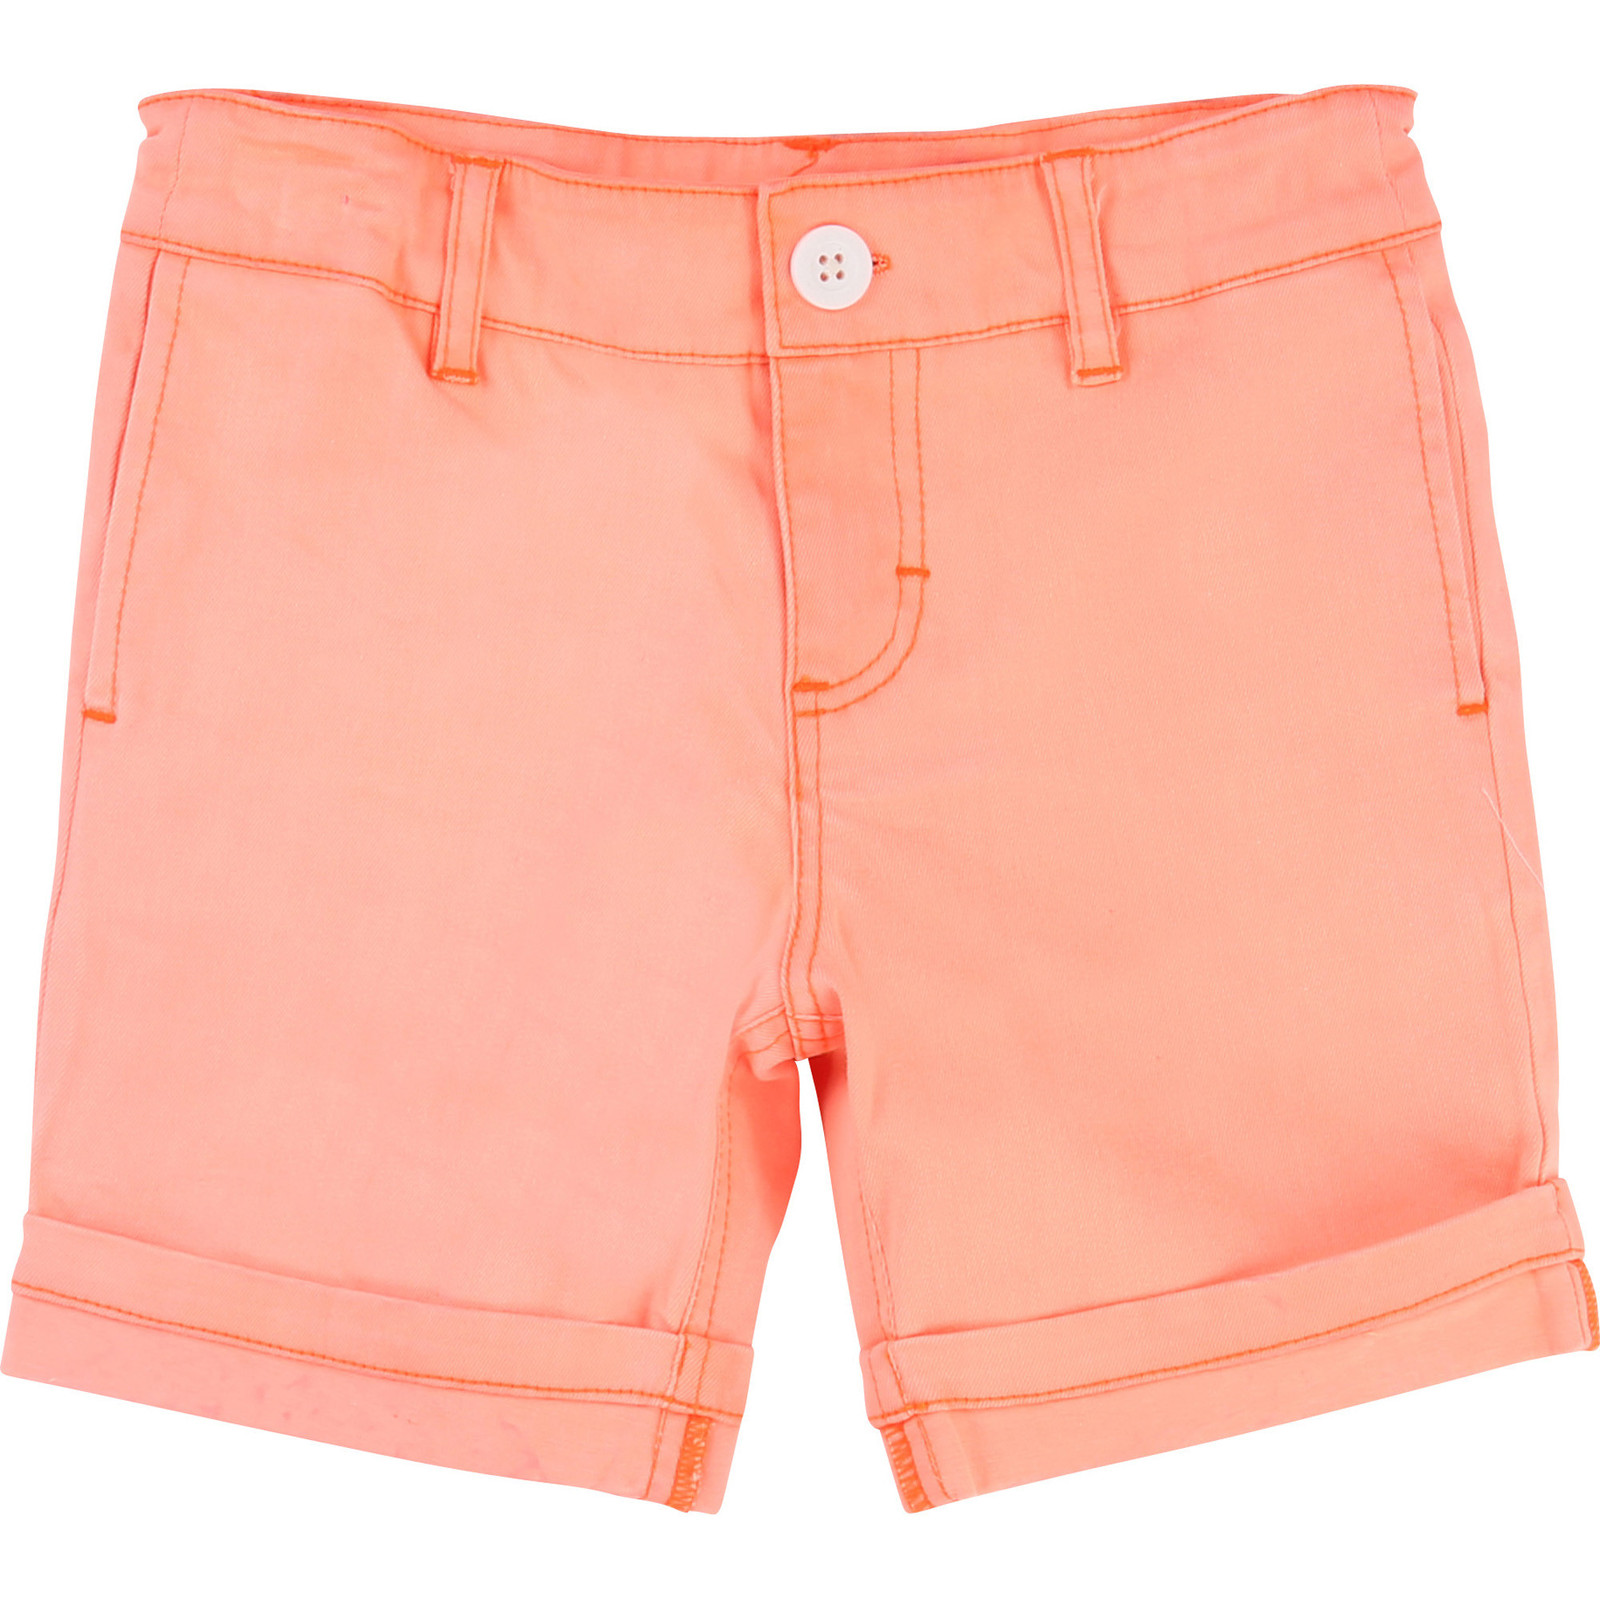 Summer Short - Neon Orange - Billybandit